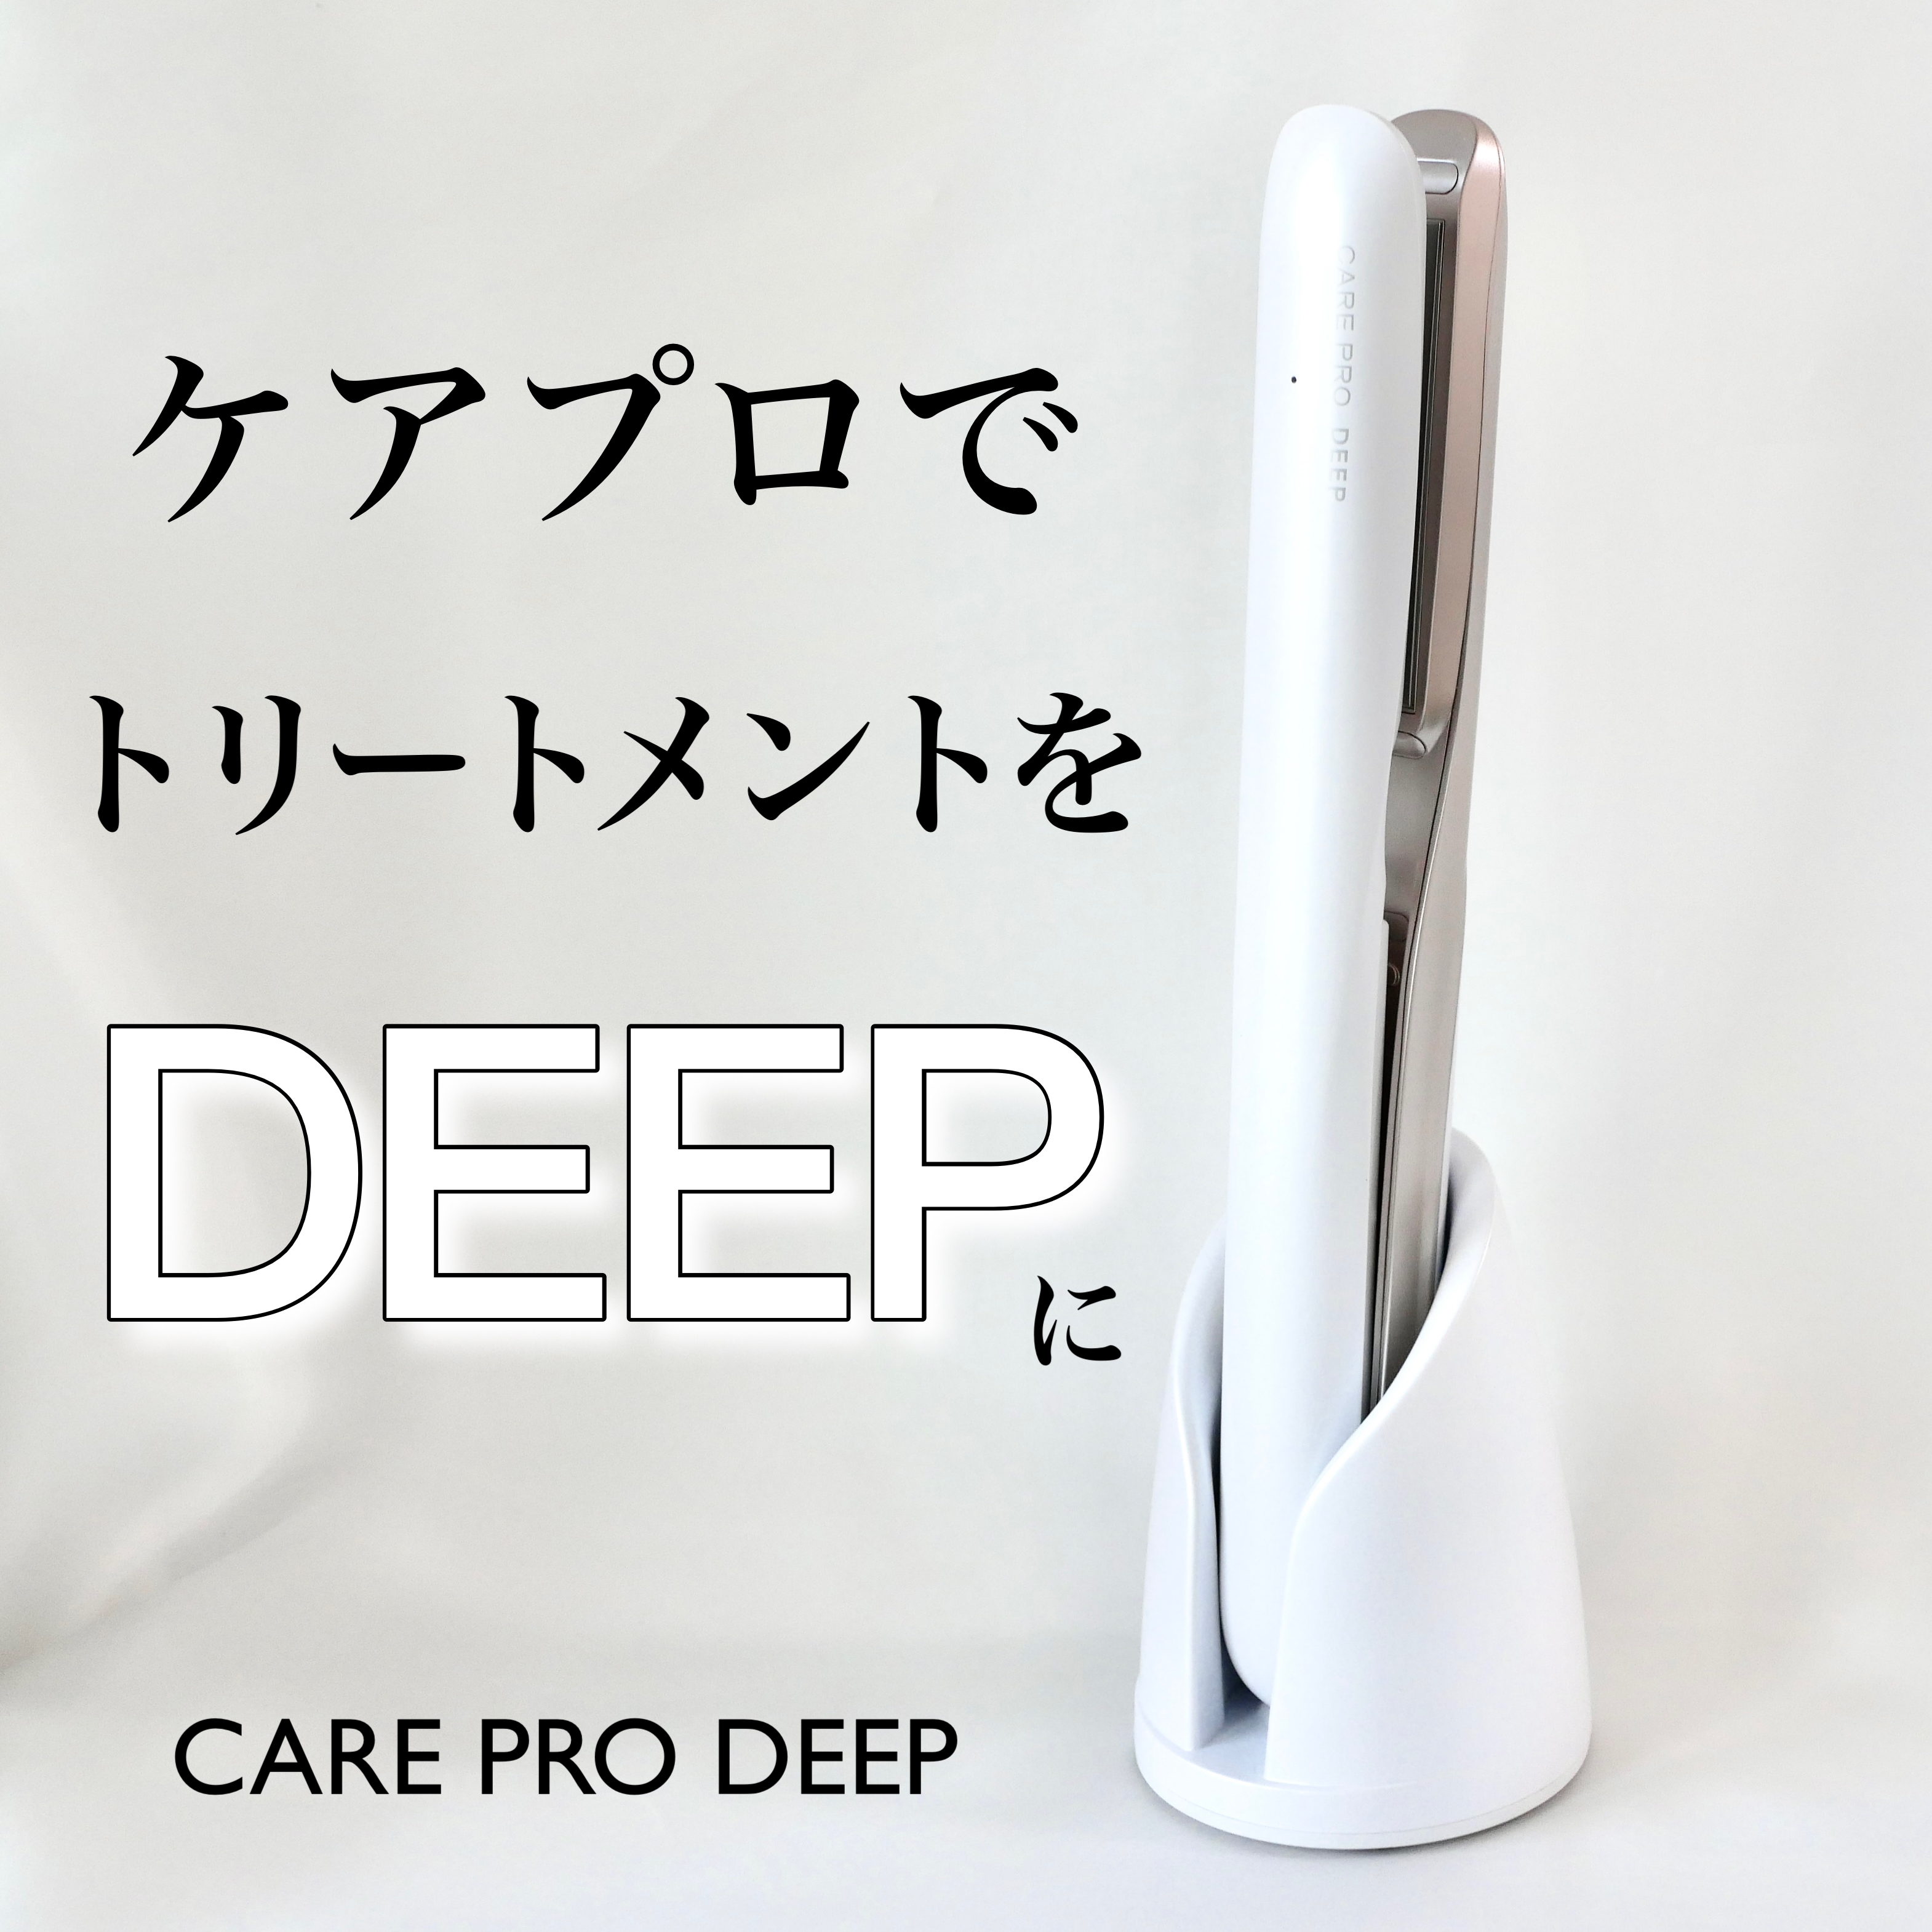 CARE PRO(ケアプロ) DEEPの良い点・メリットに関するDOMEさんの口コミ画像1